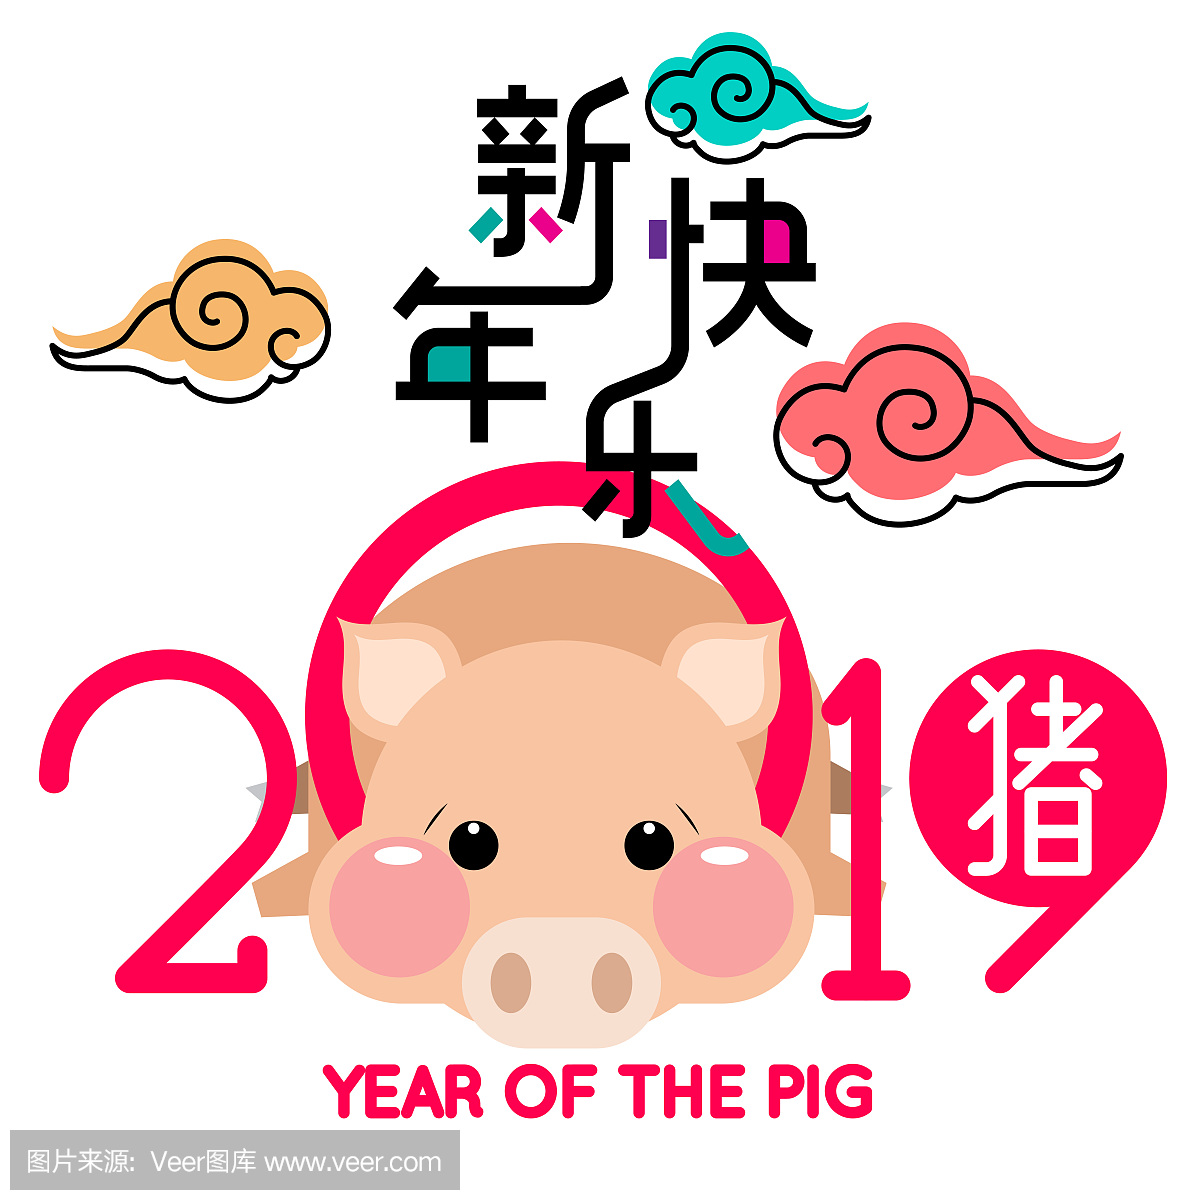 乐2019年,可爱的卡通猪猪年。中文措辞翻译:中